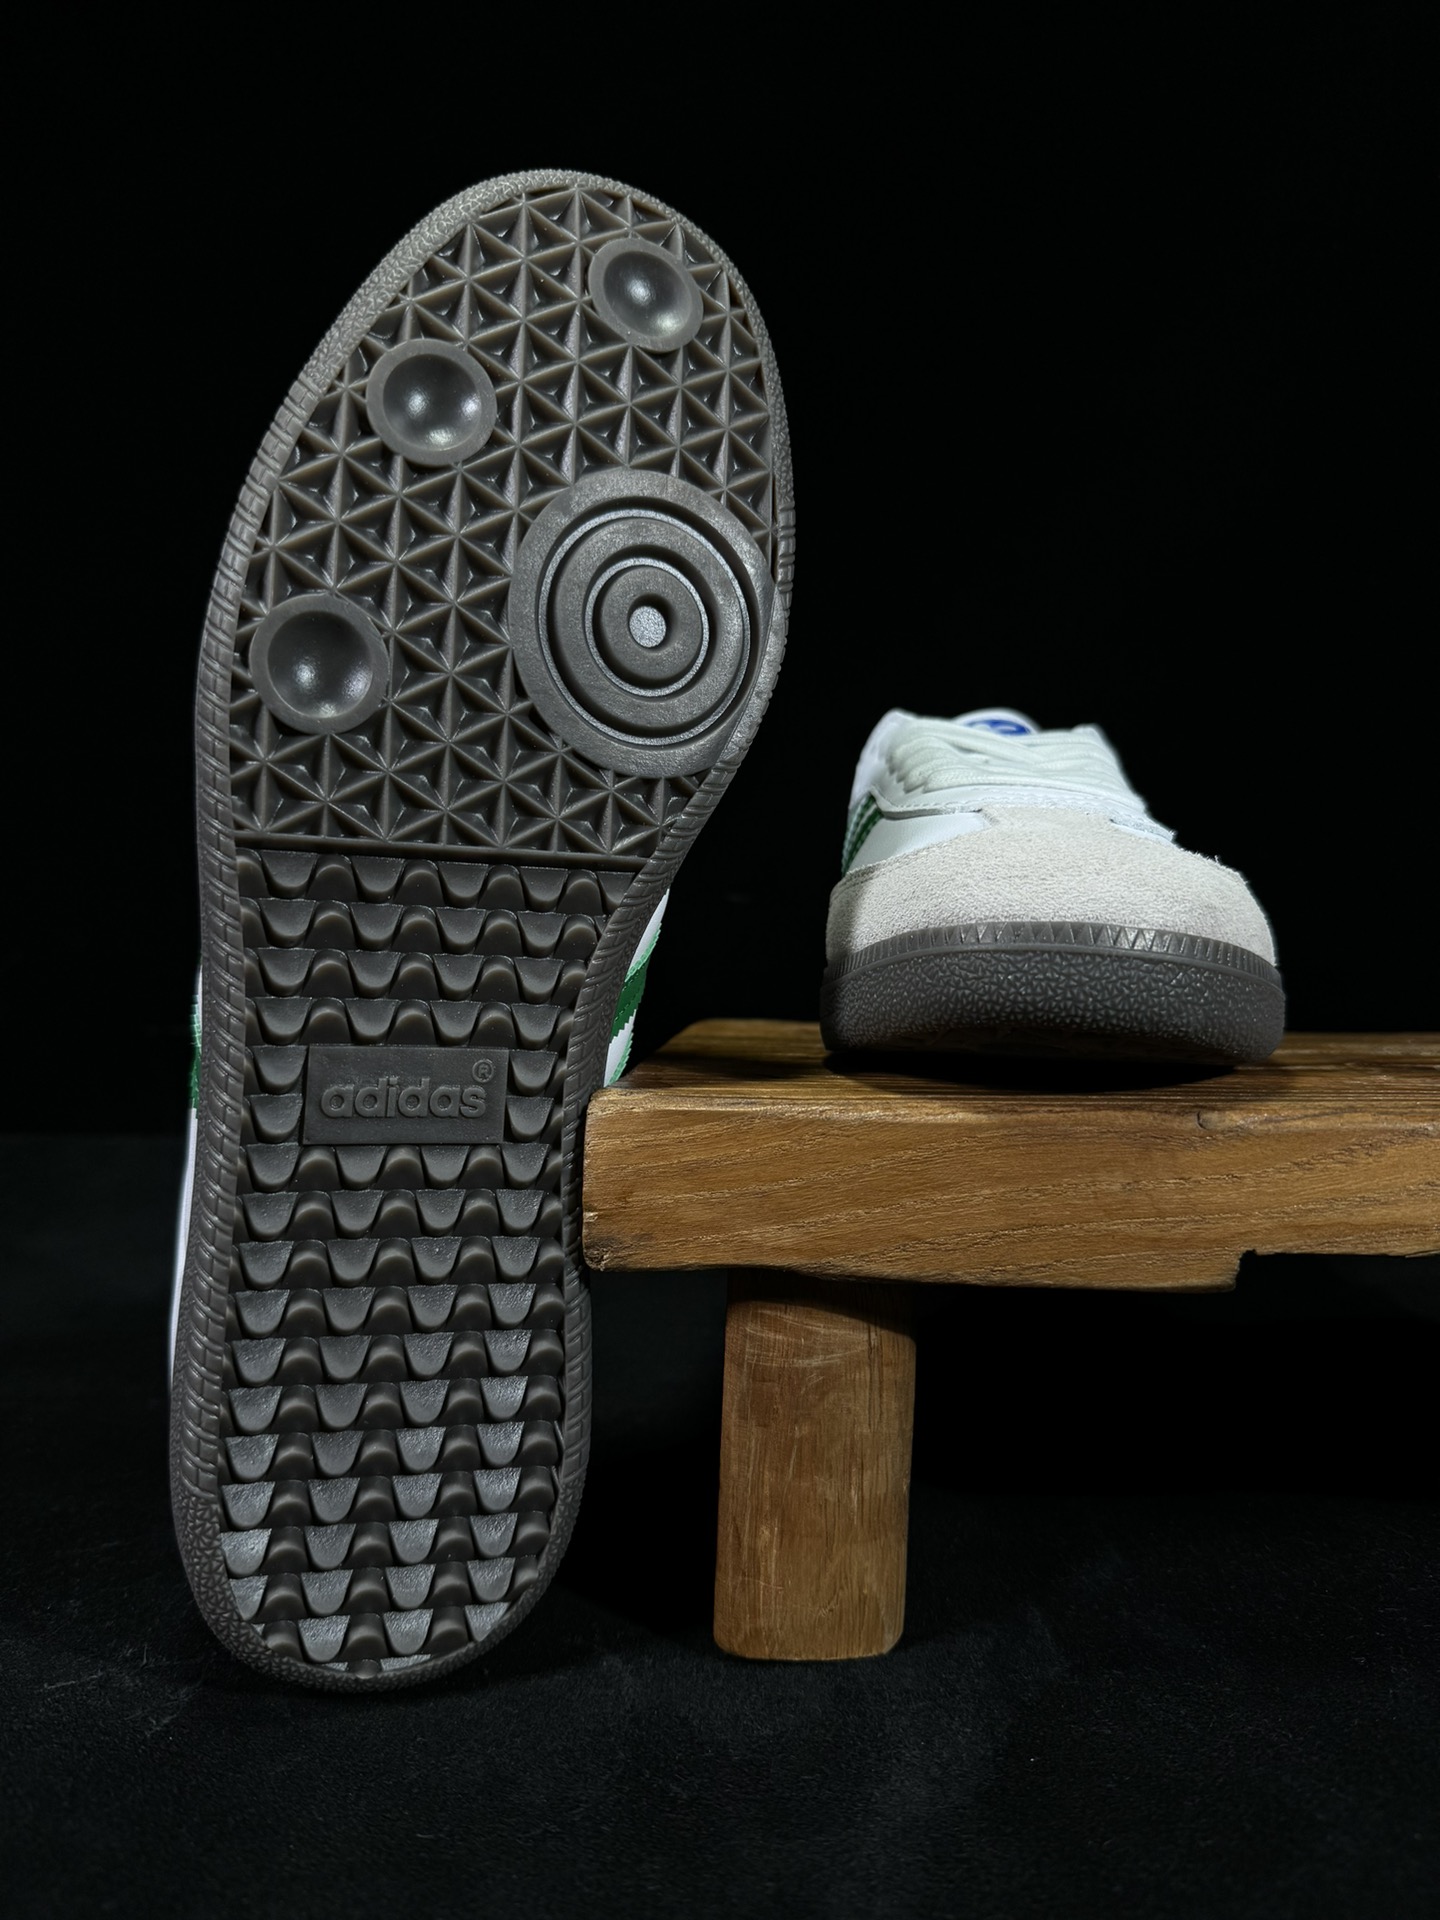 阿迪桑巴德训鞋白绿Adidas/阿迪达斯SAMBAVEGAN黑白男女低帮经典运动鞋板鞋IG1024尺码3